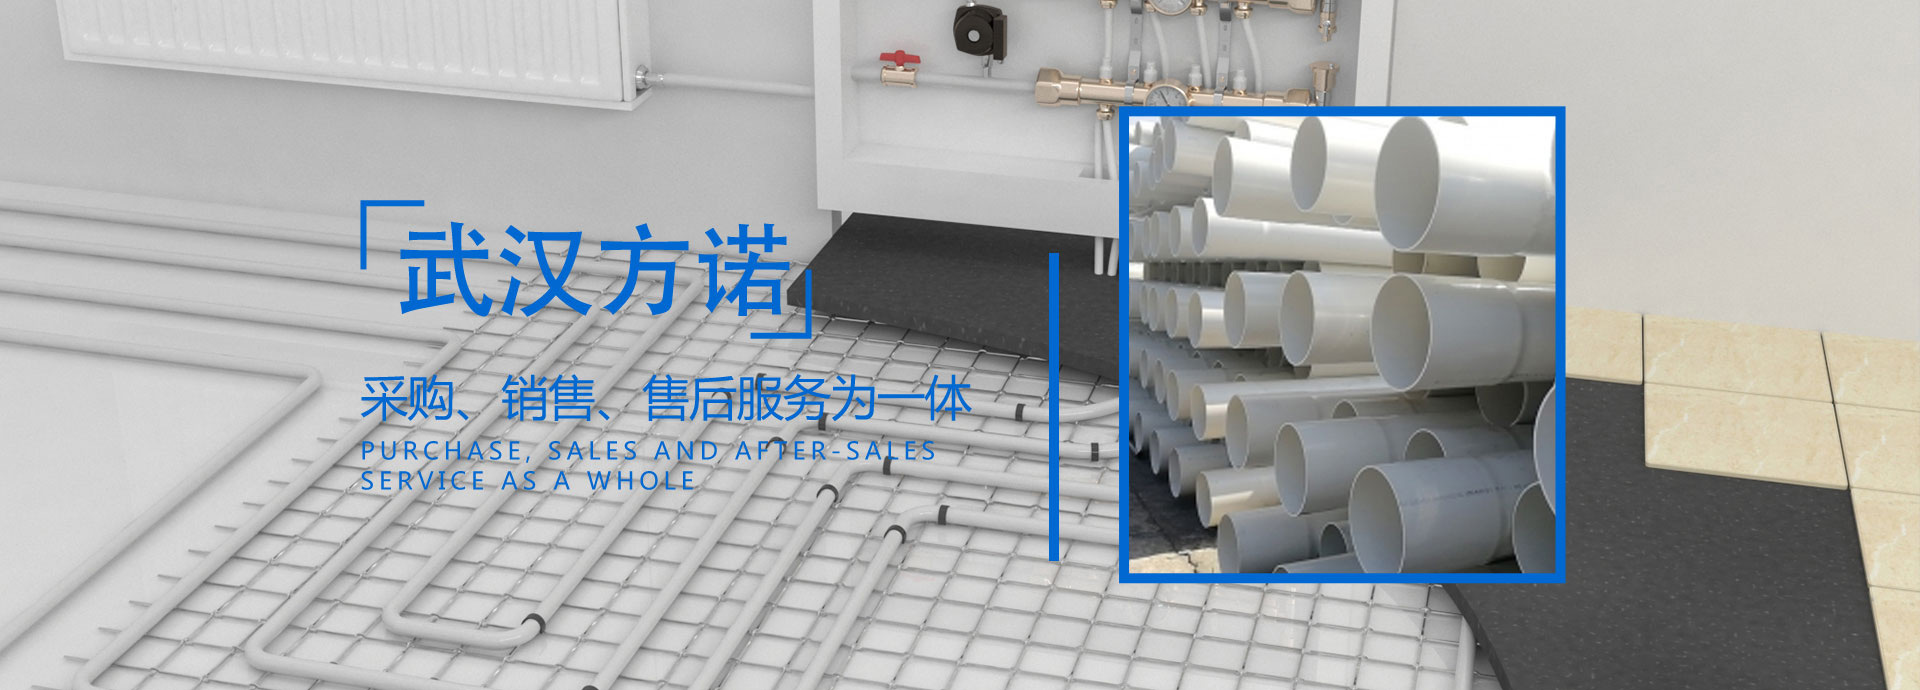 武汉方诺工程塑胶管道有限公司